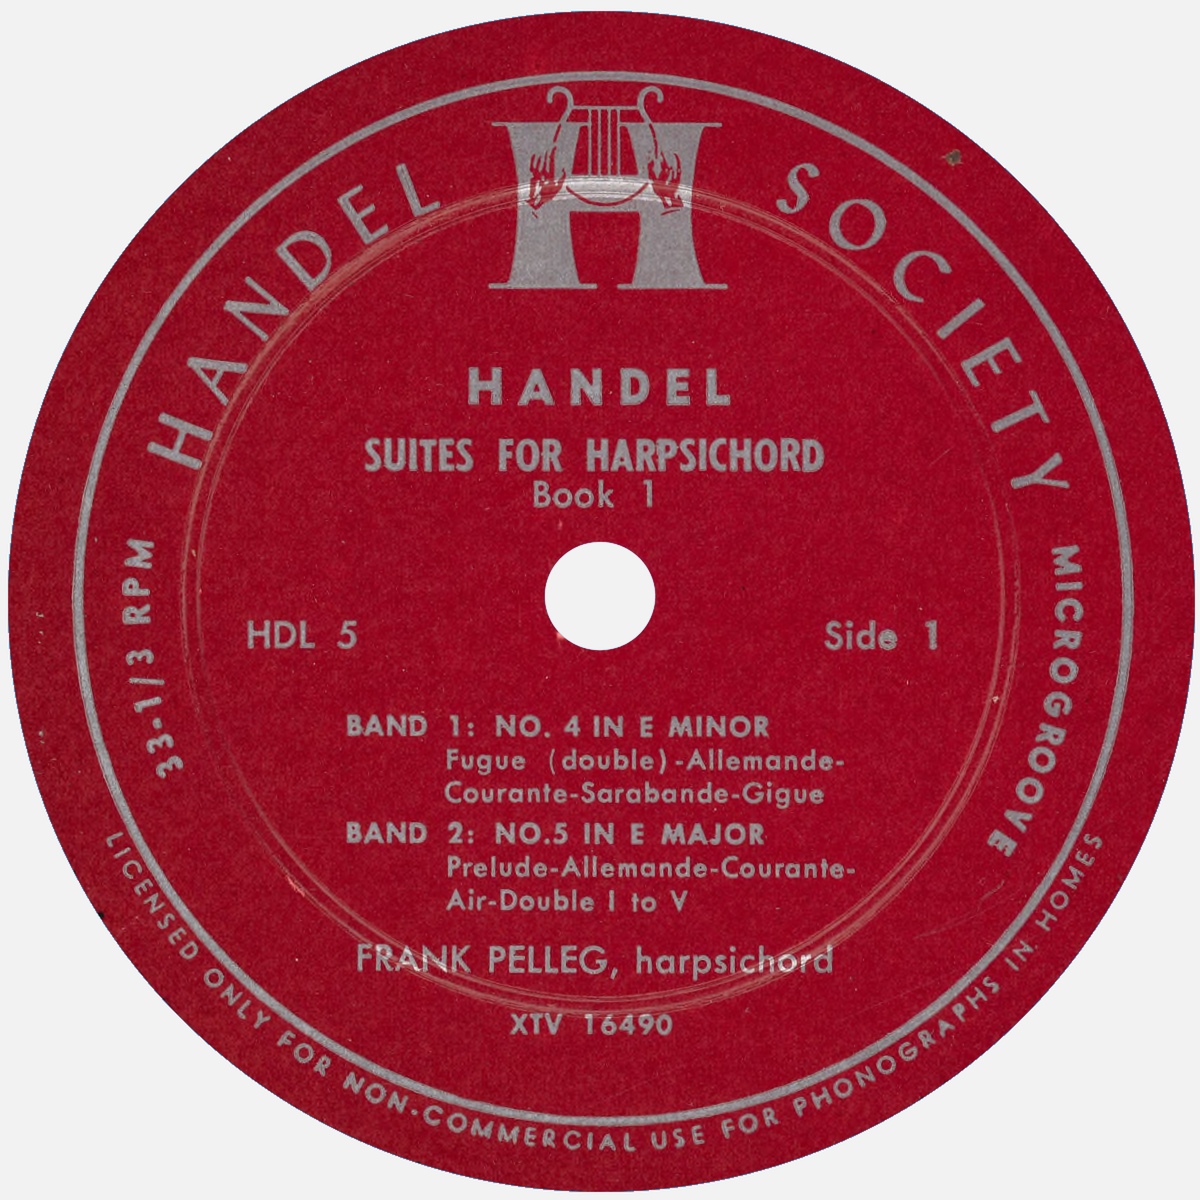 Étiquette recto du disque Handel Society HDL 5